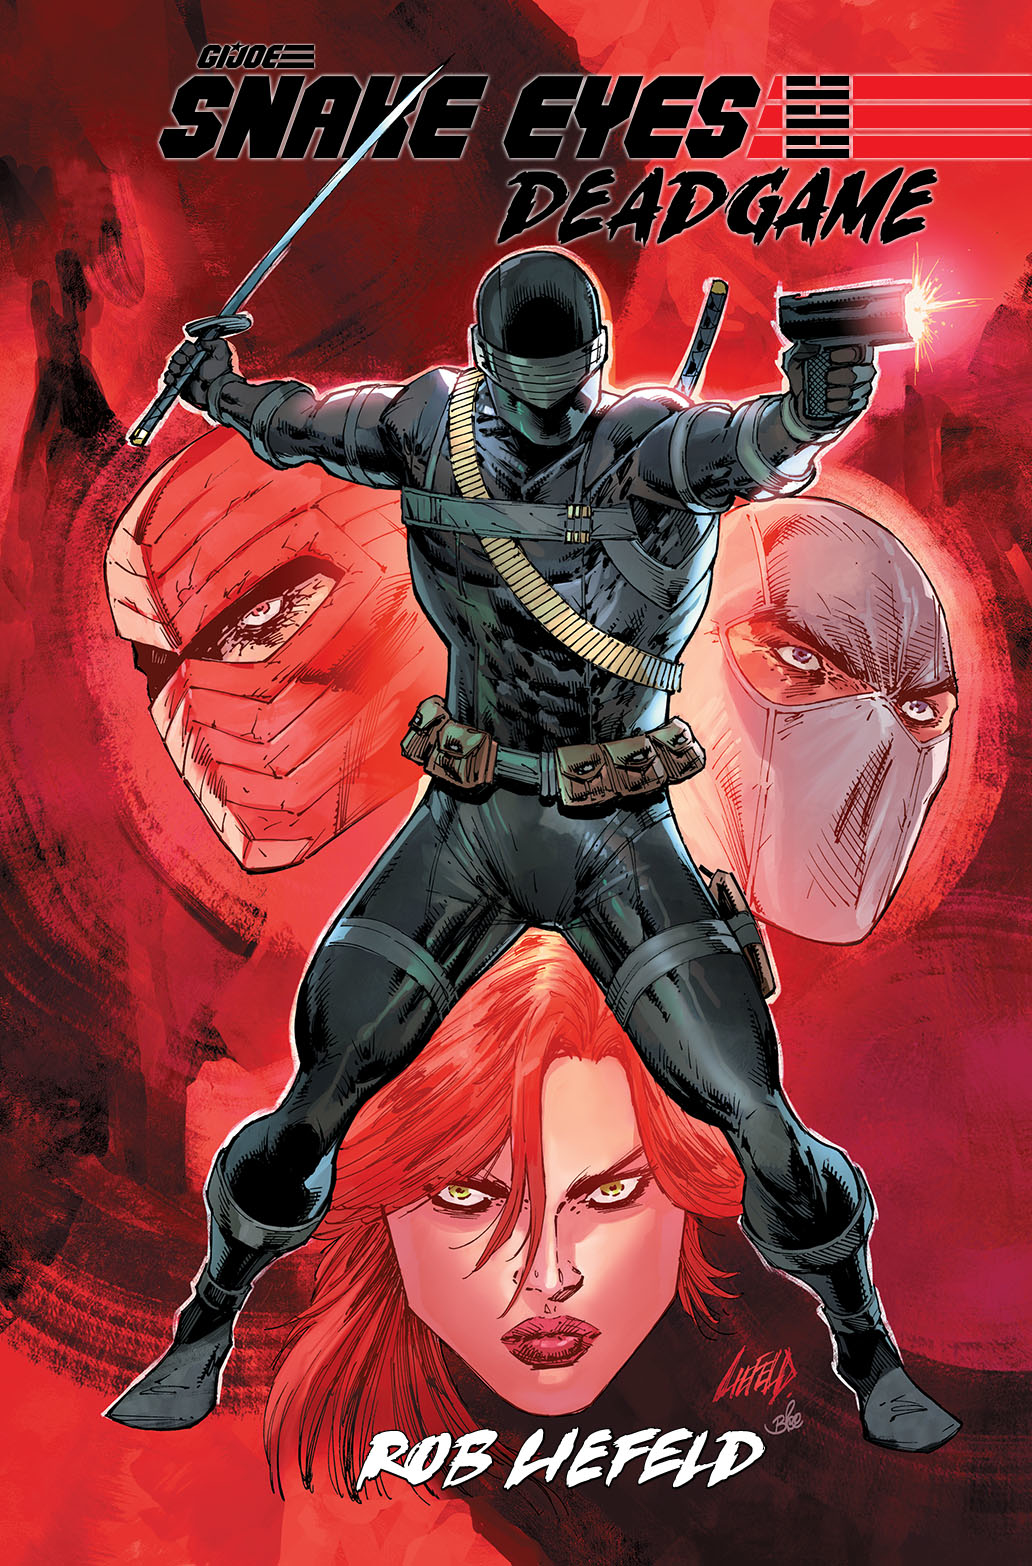 Snake Eyes Deadgame Graphic Novel